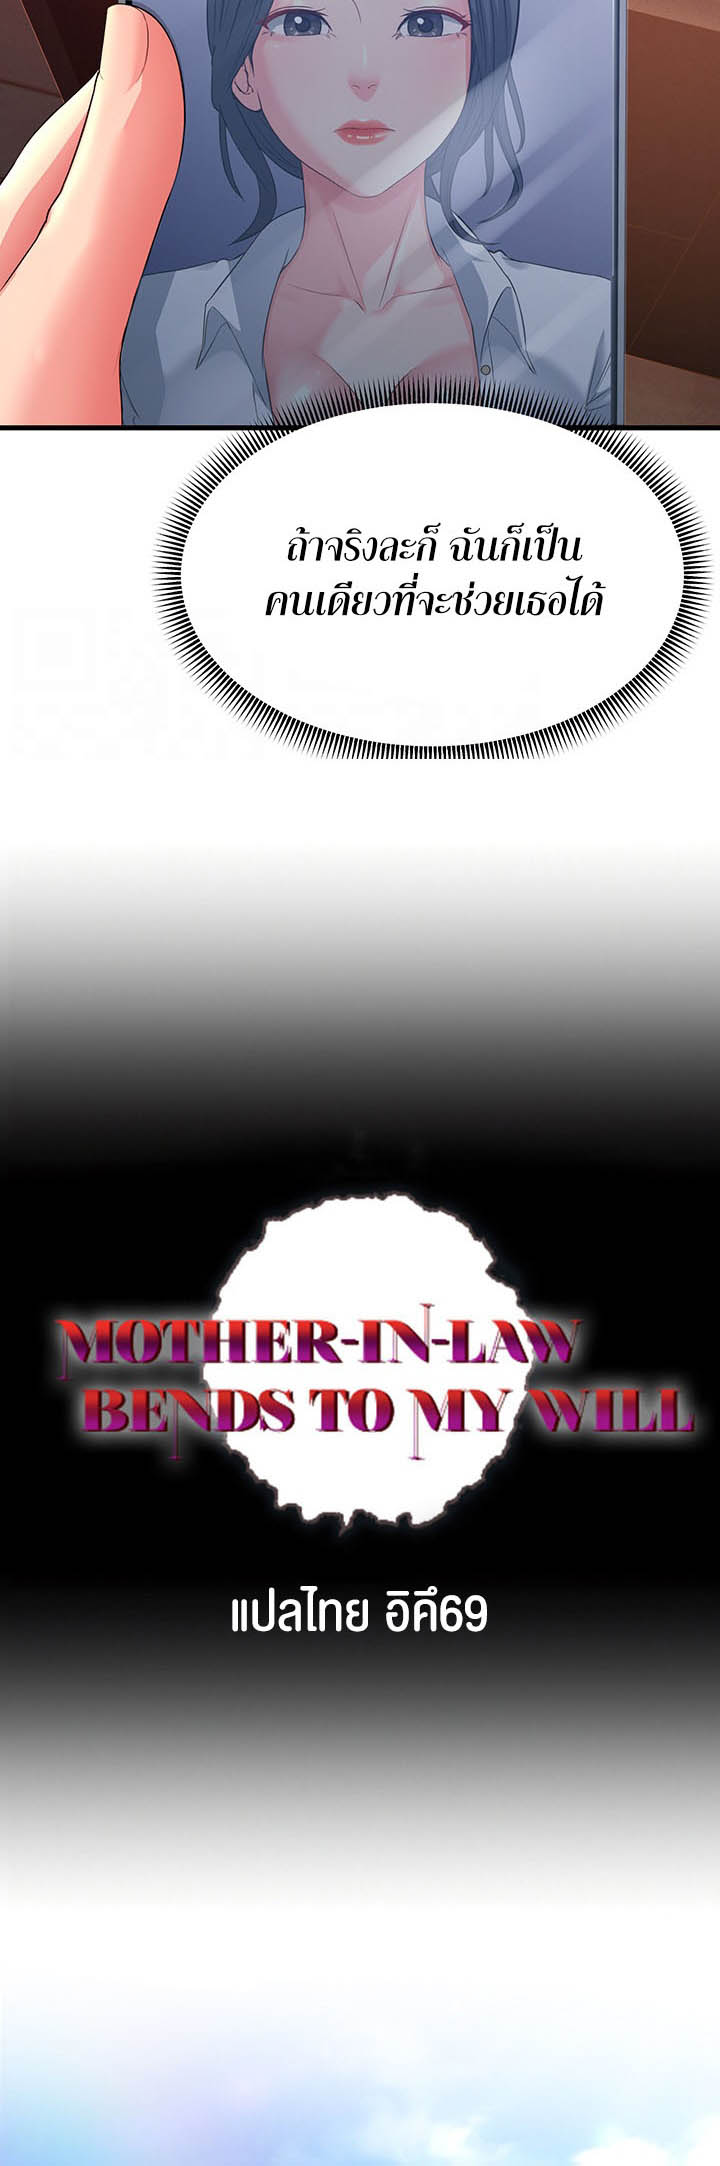 อ่านโดจิน เรื่อง Mother in Law Bends To My Will 17 14